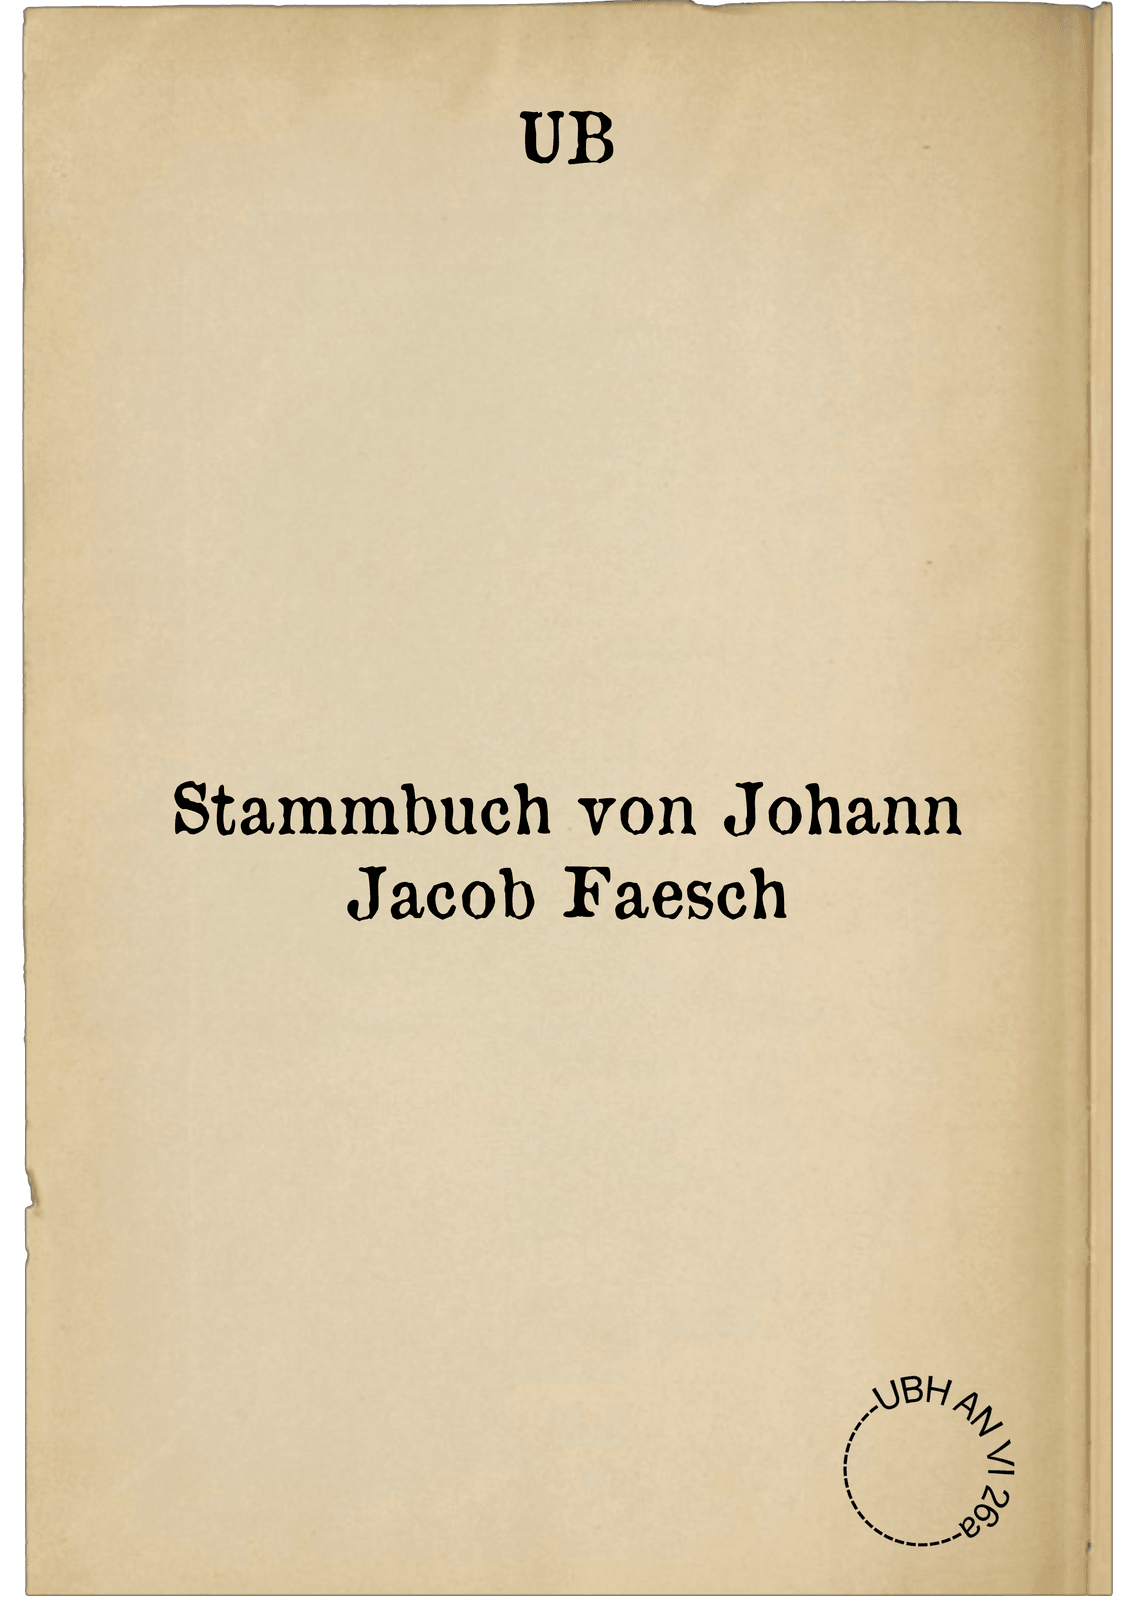 Stammbuch von Johann Jacob Faesch